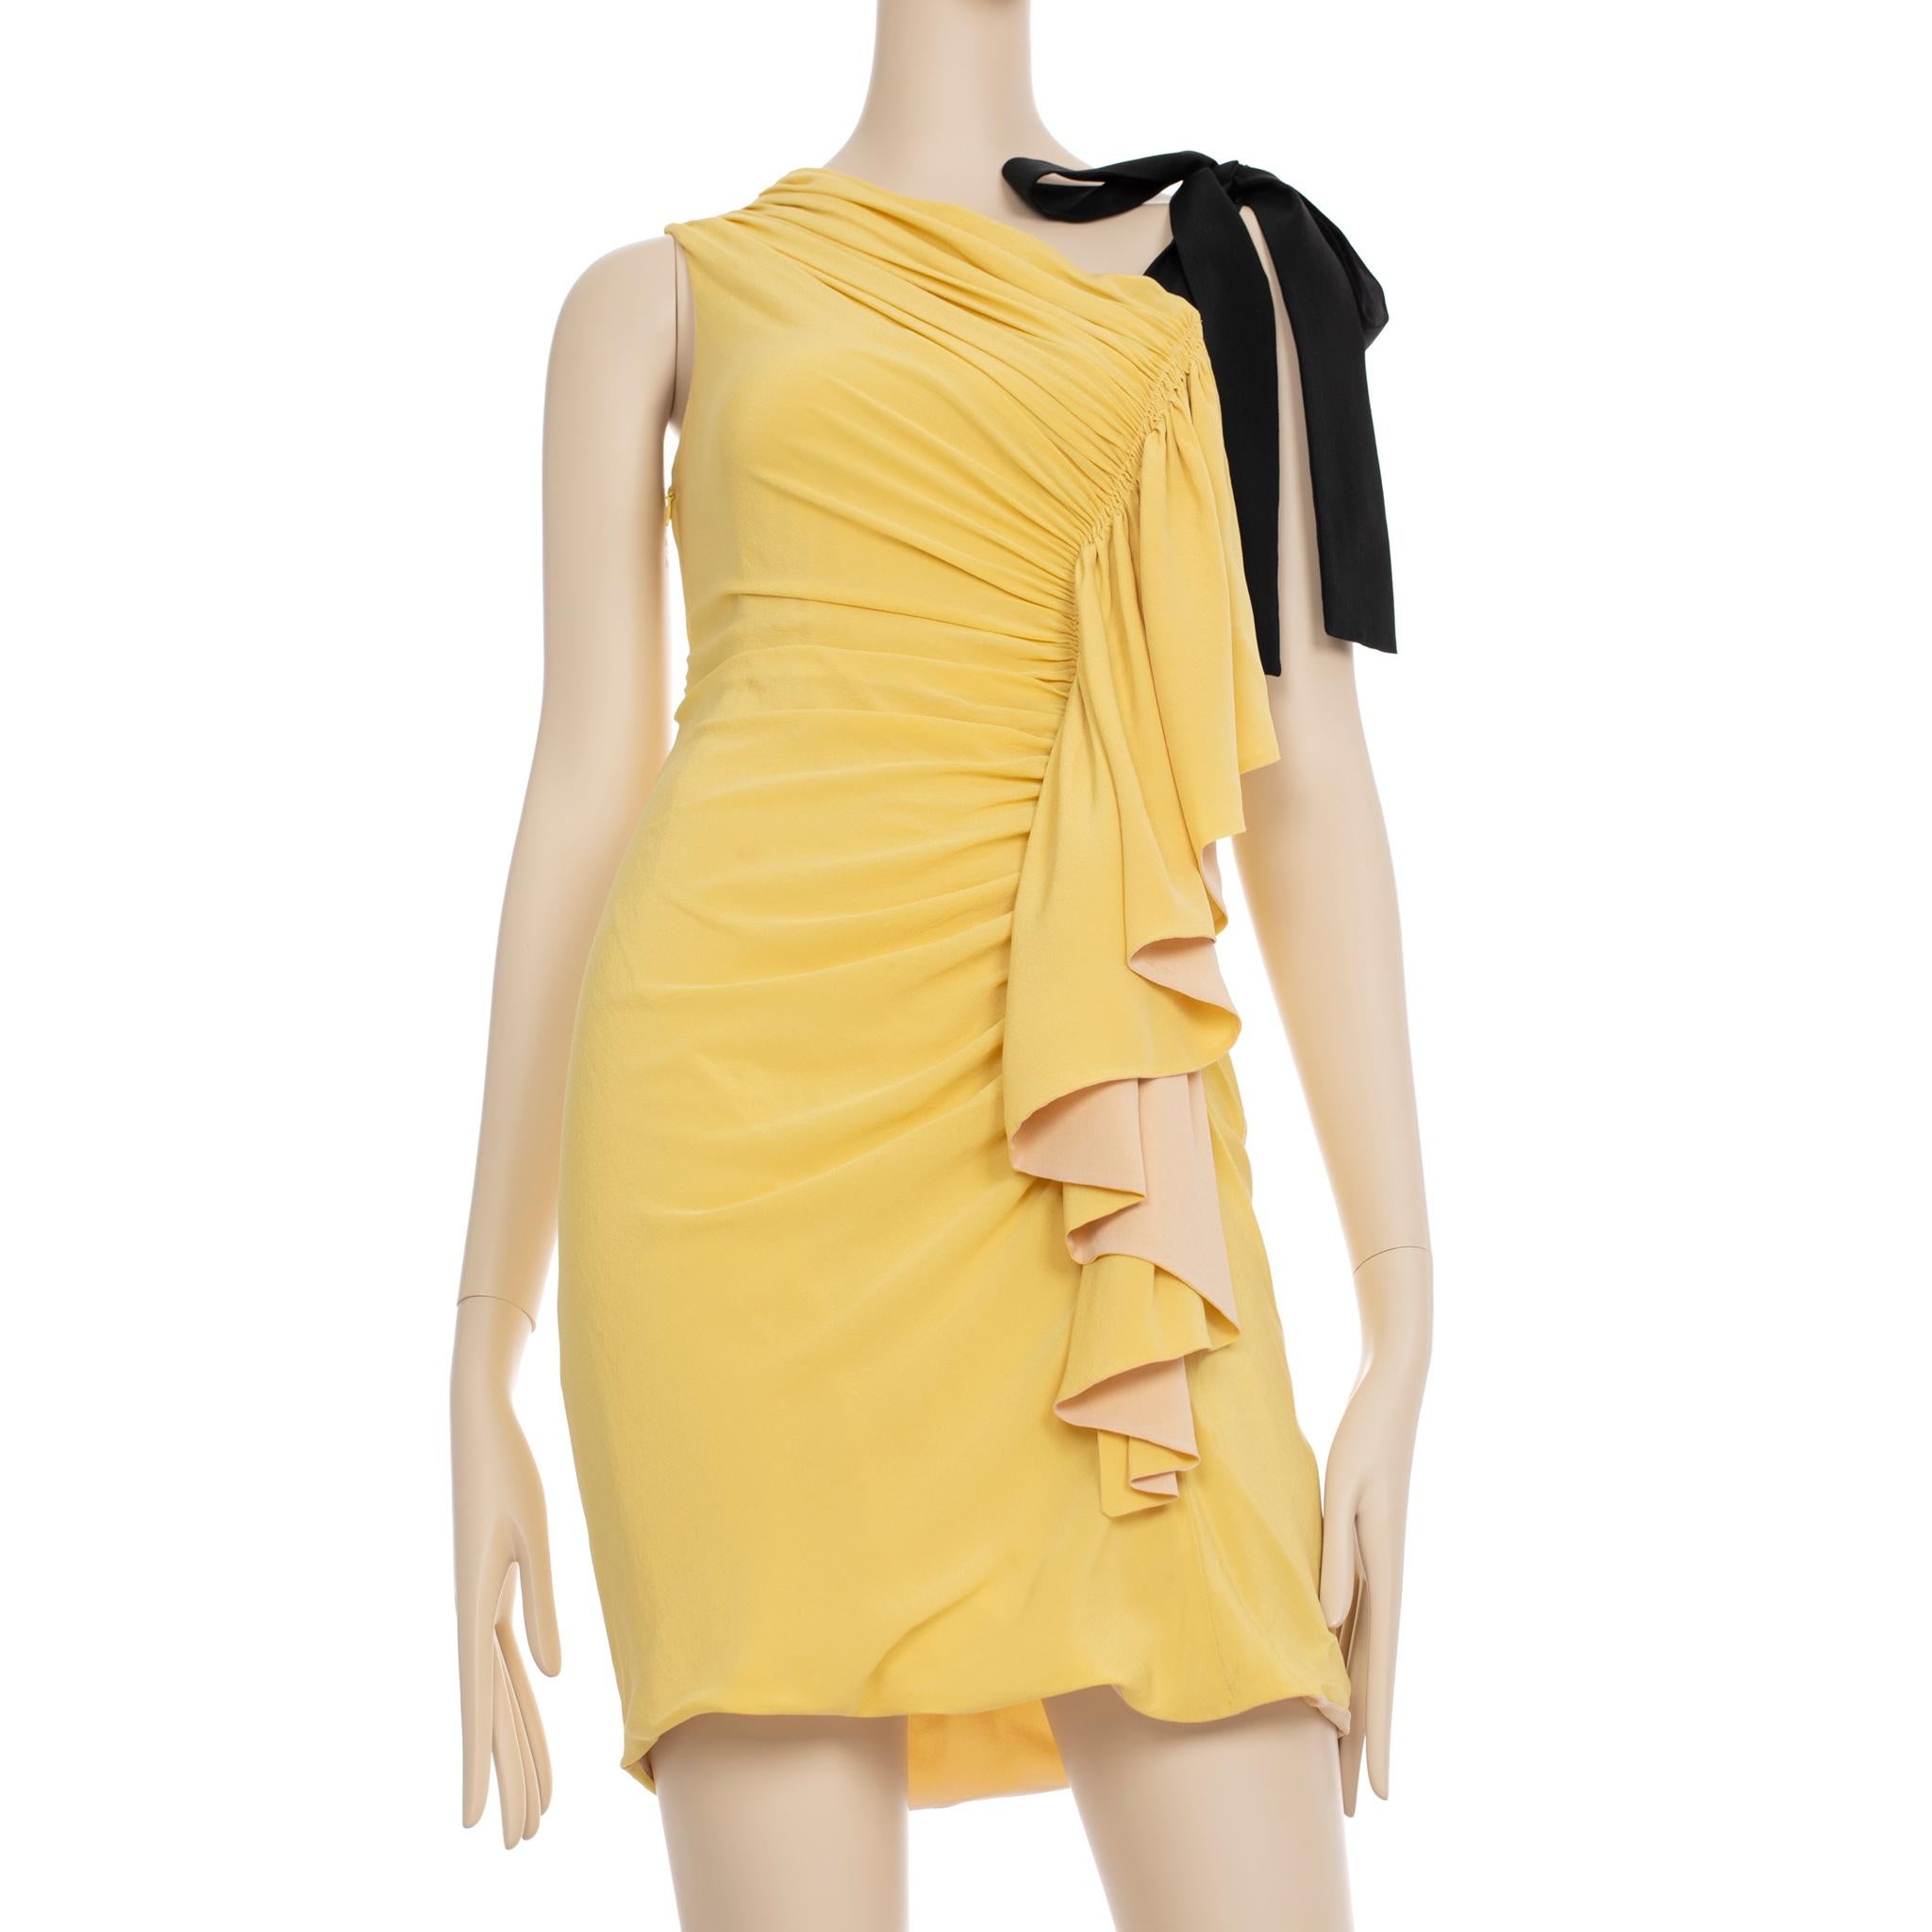 Cette élégante robe Fendi est confectionnée dans deux tons complémentaires, le jaune et le nude, et présente des détails froncés pour une texture subtile. Parfaite pour les cocktails d'été, cette pièce élégante vous fera sortir du lot.

Marque :